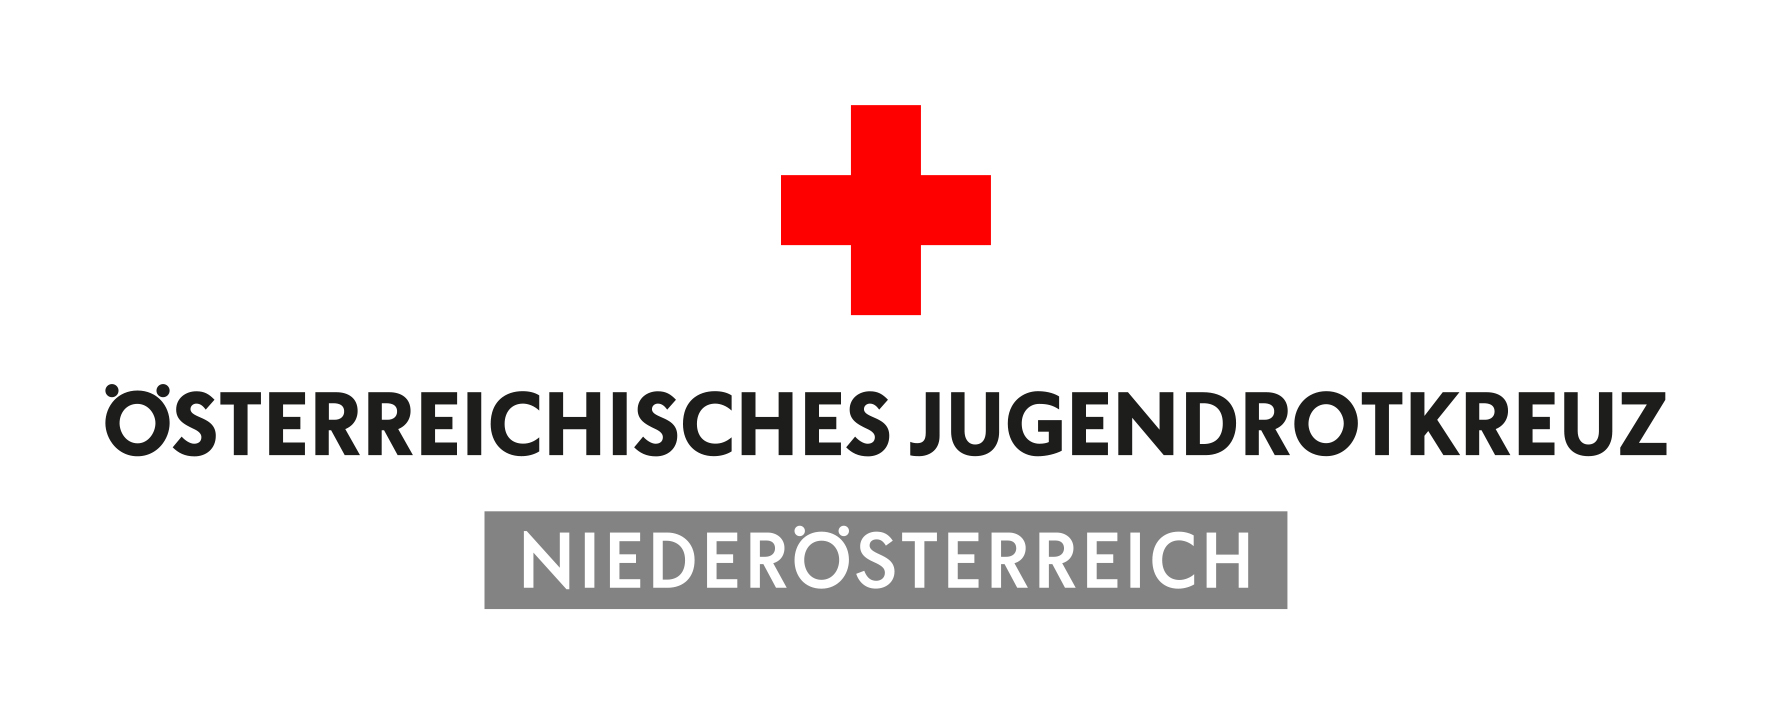 Österreichisches Jugendrotkreuz Niederösterreich